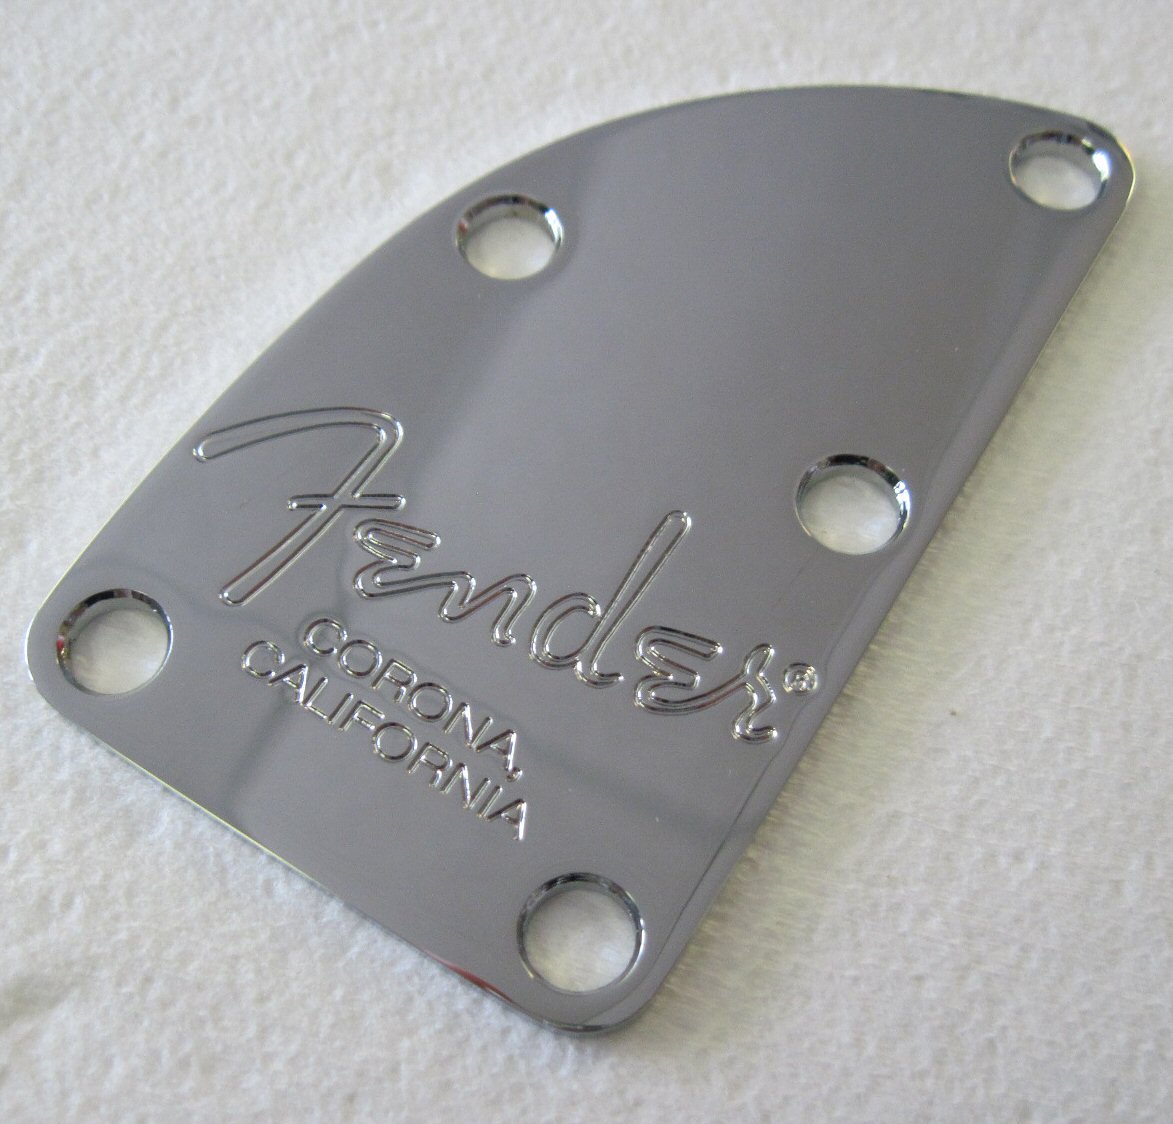 005-8329-000 Fender Bass American Dlx Chrome 5 Bolt Logo Corona CA Neck Plate 